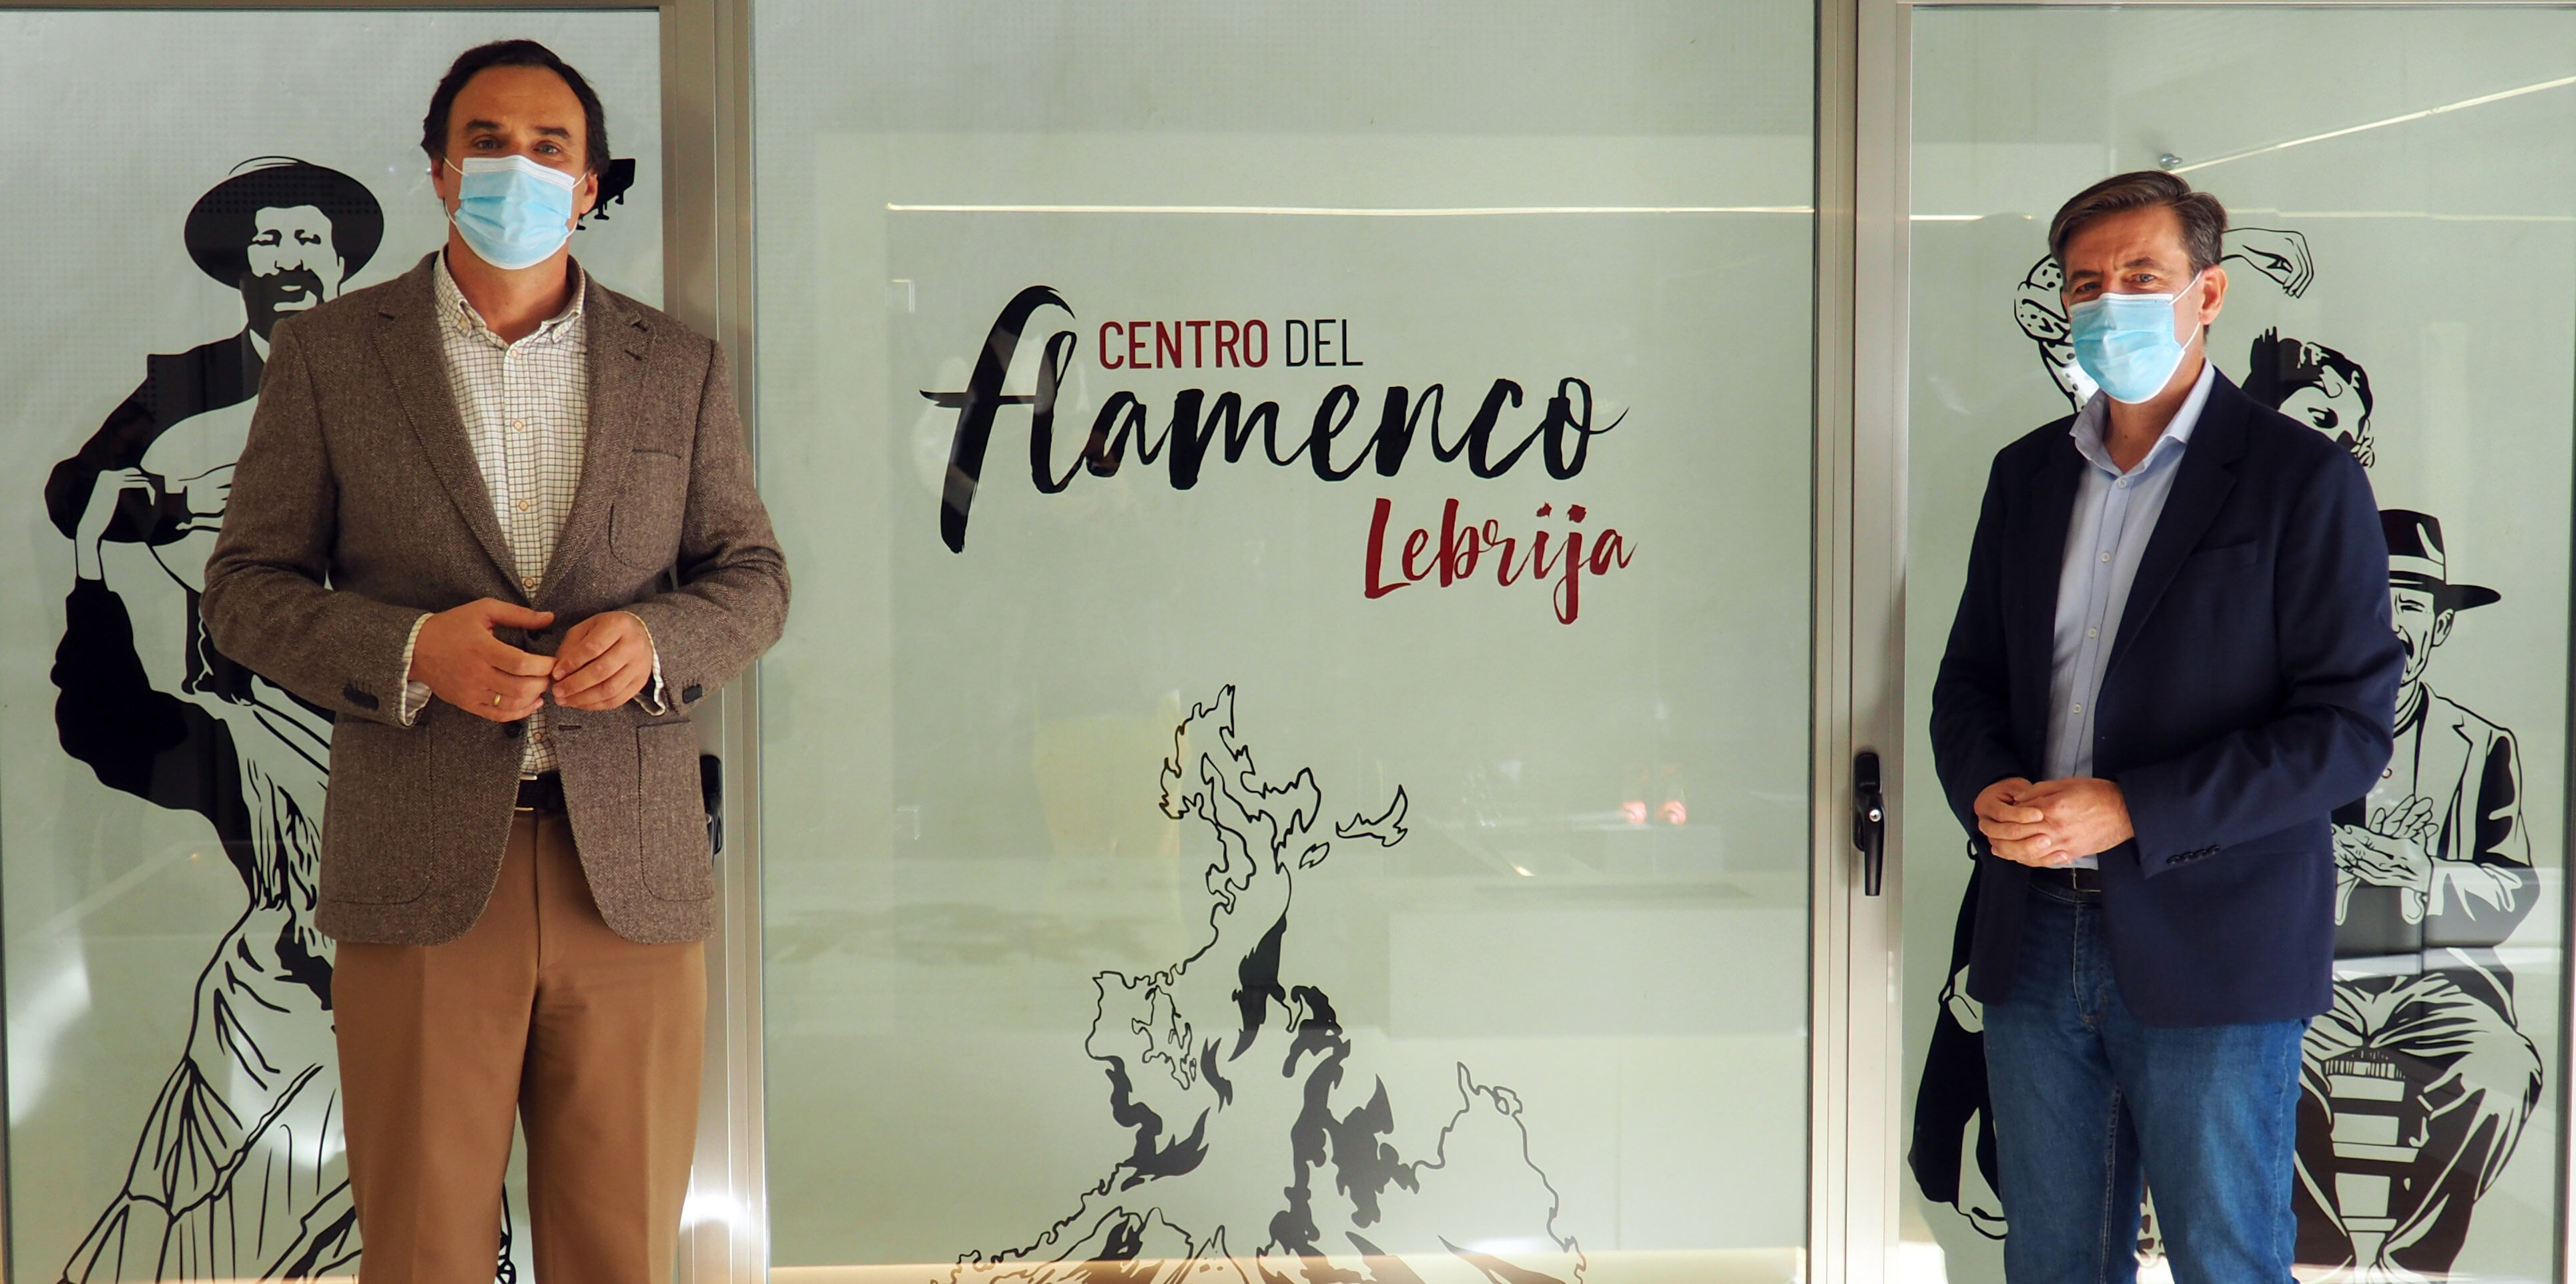 10 NOV - El Director del IAF visita el Centro de Flamenco de Lebrija  (1)